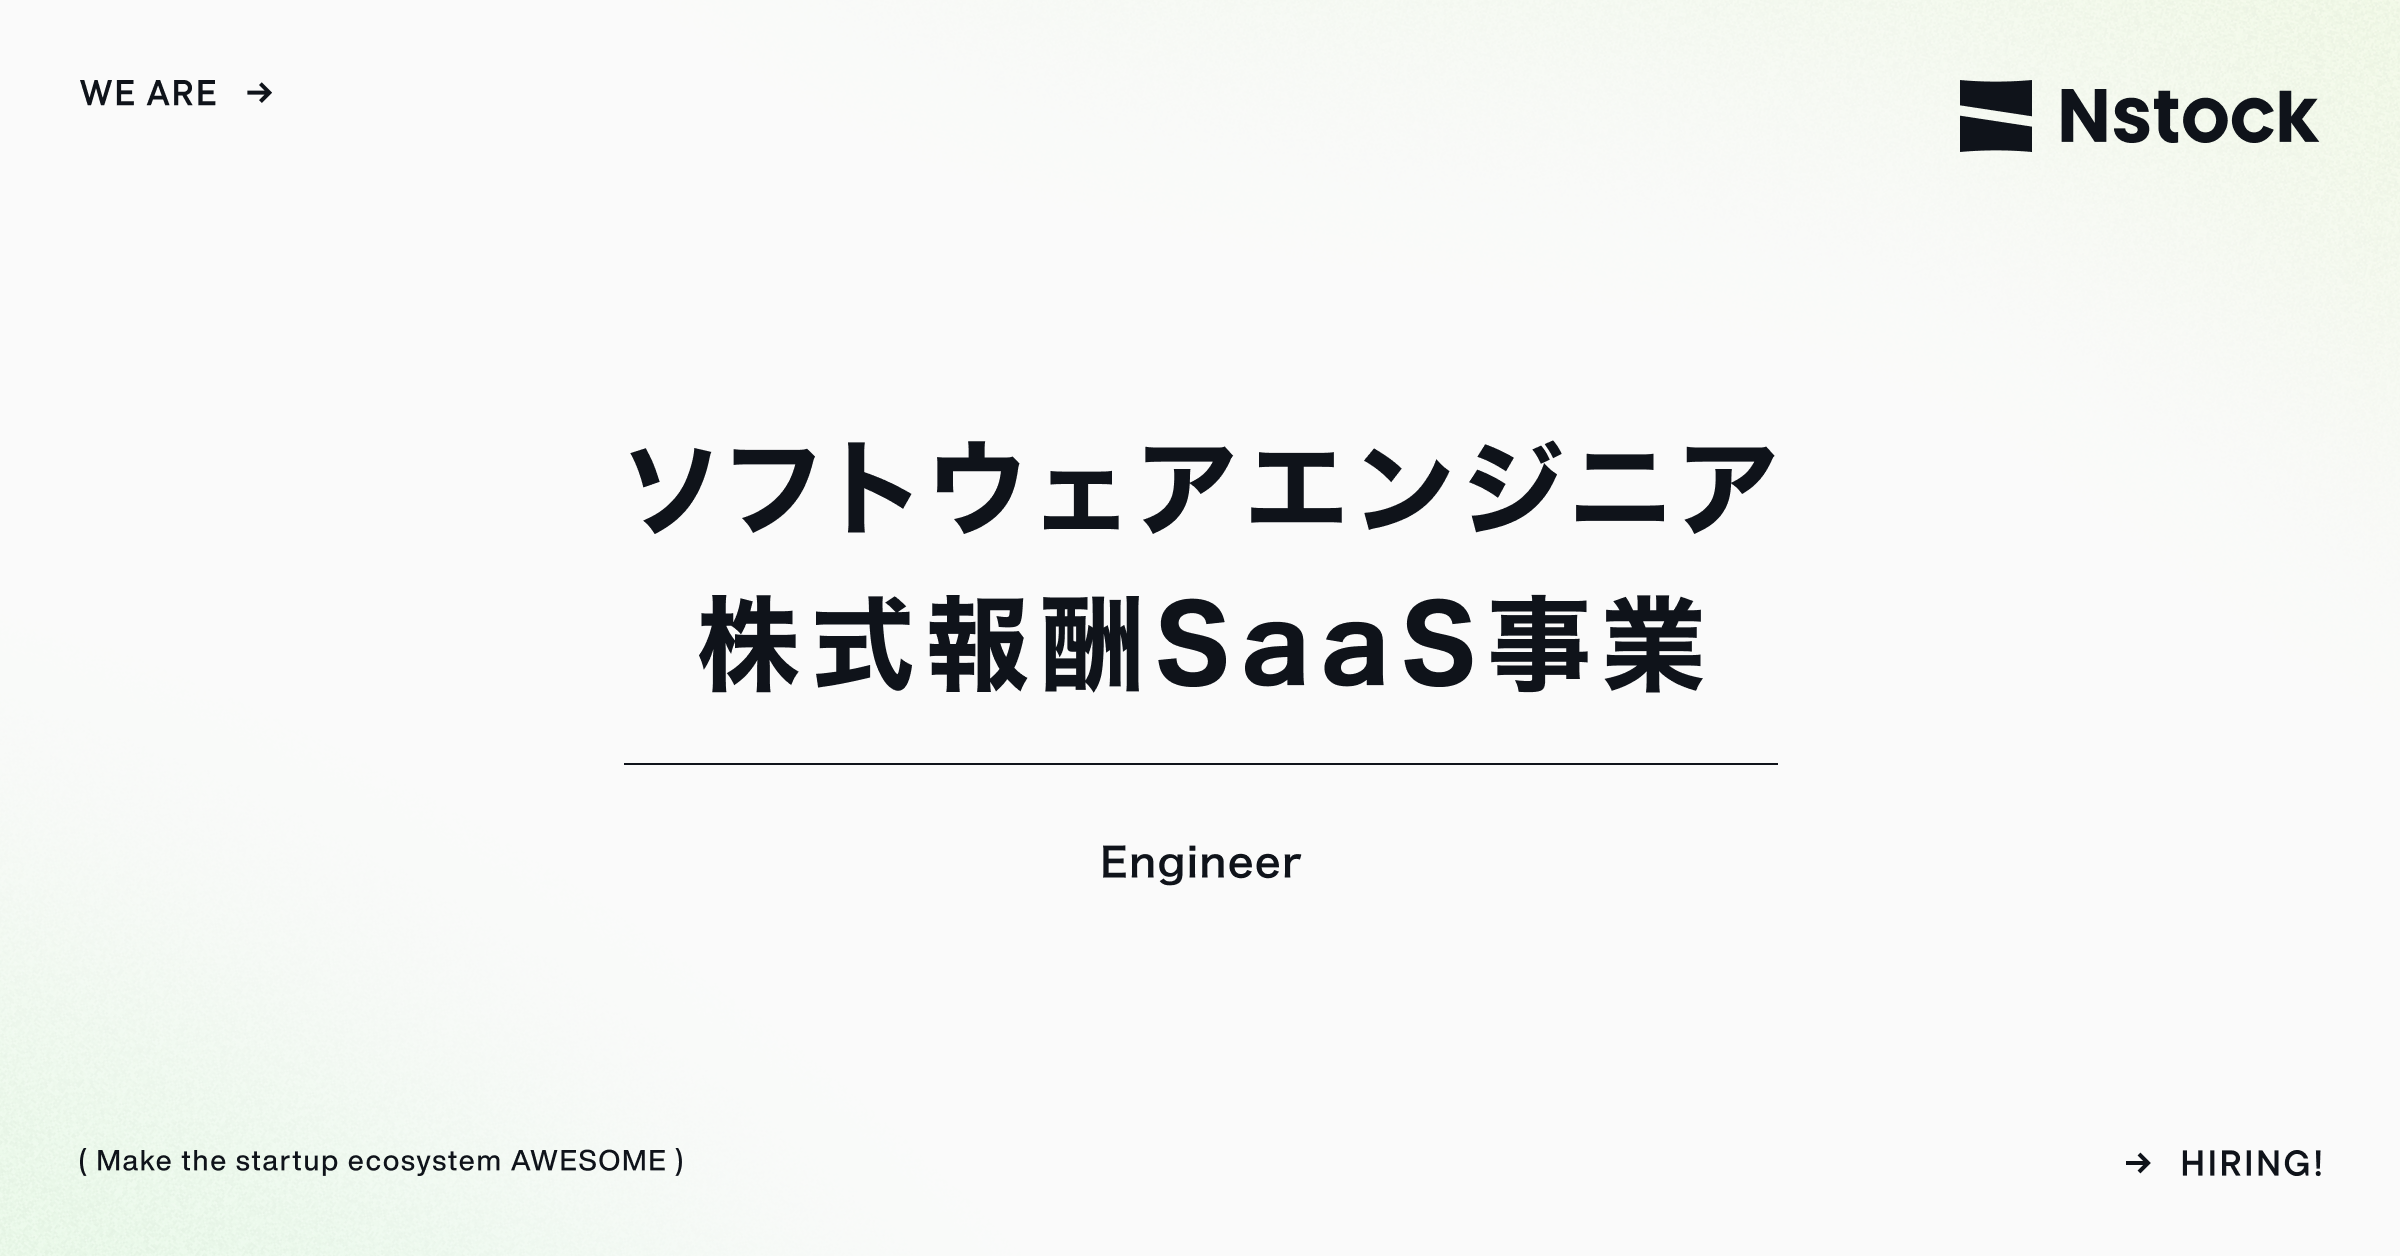 株式報酬SaaS事業 ソフトウェアエンジニア